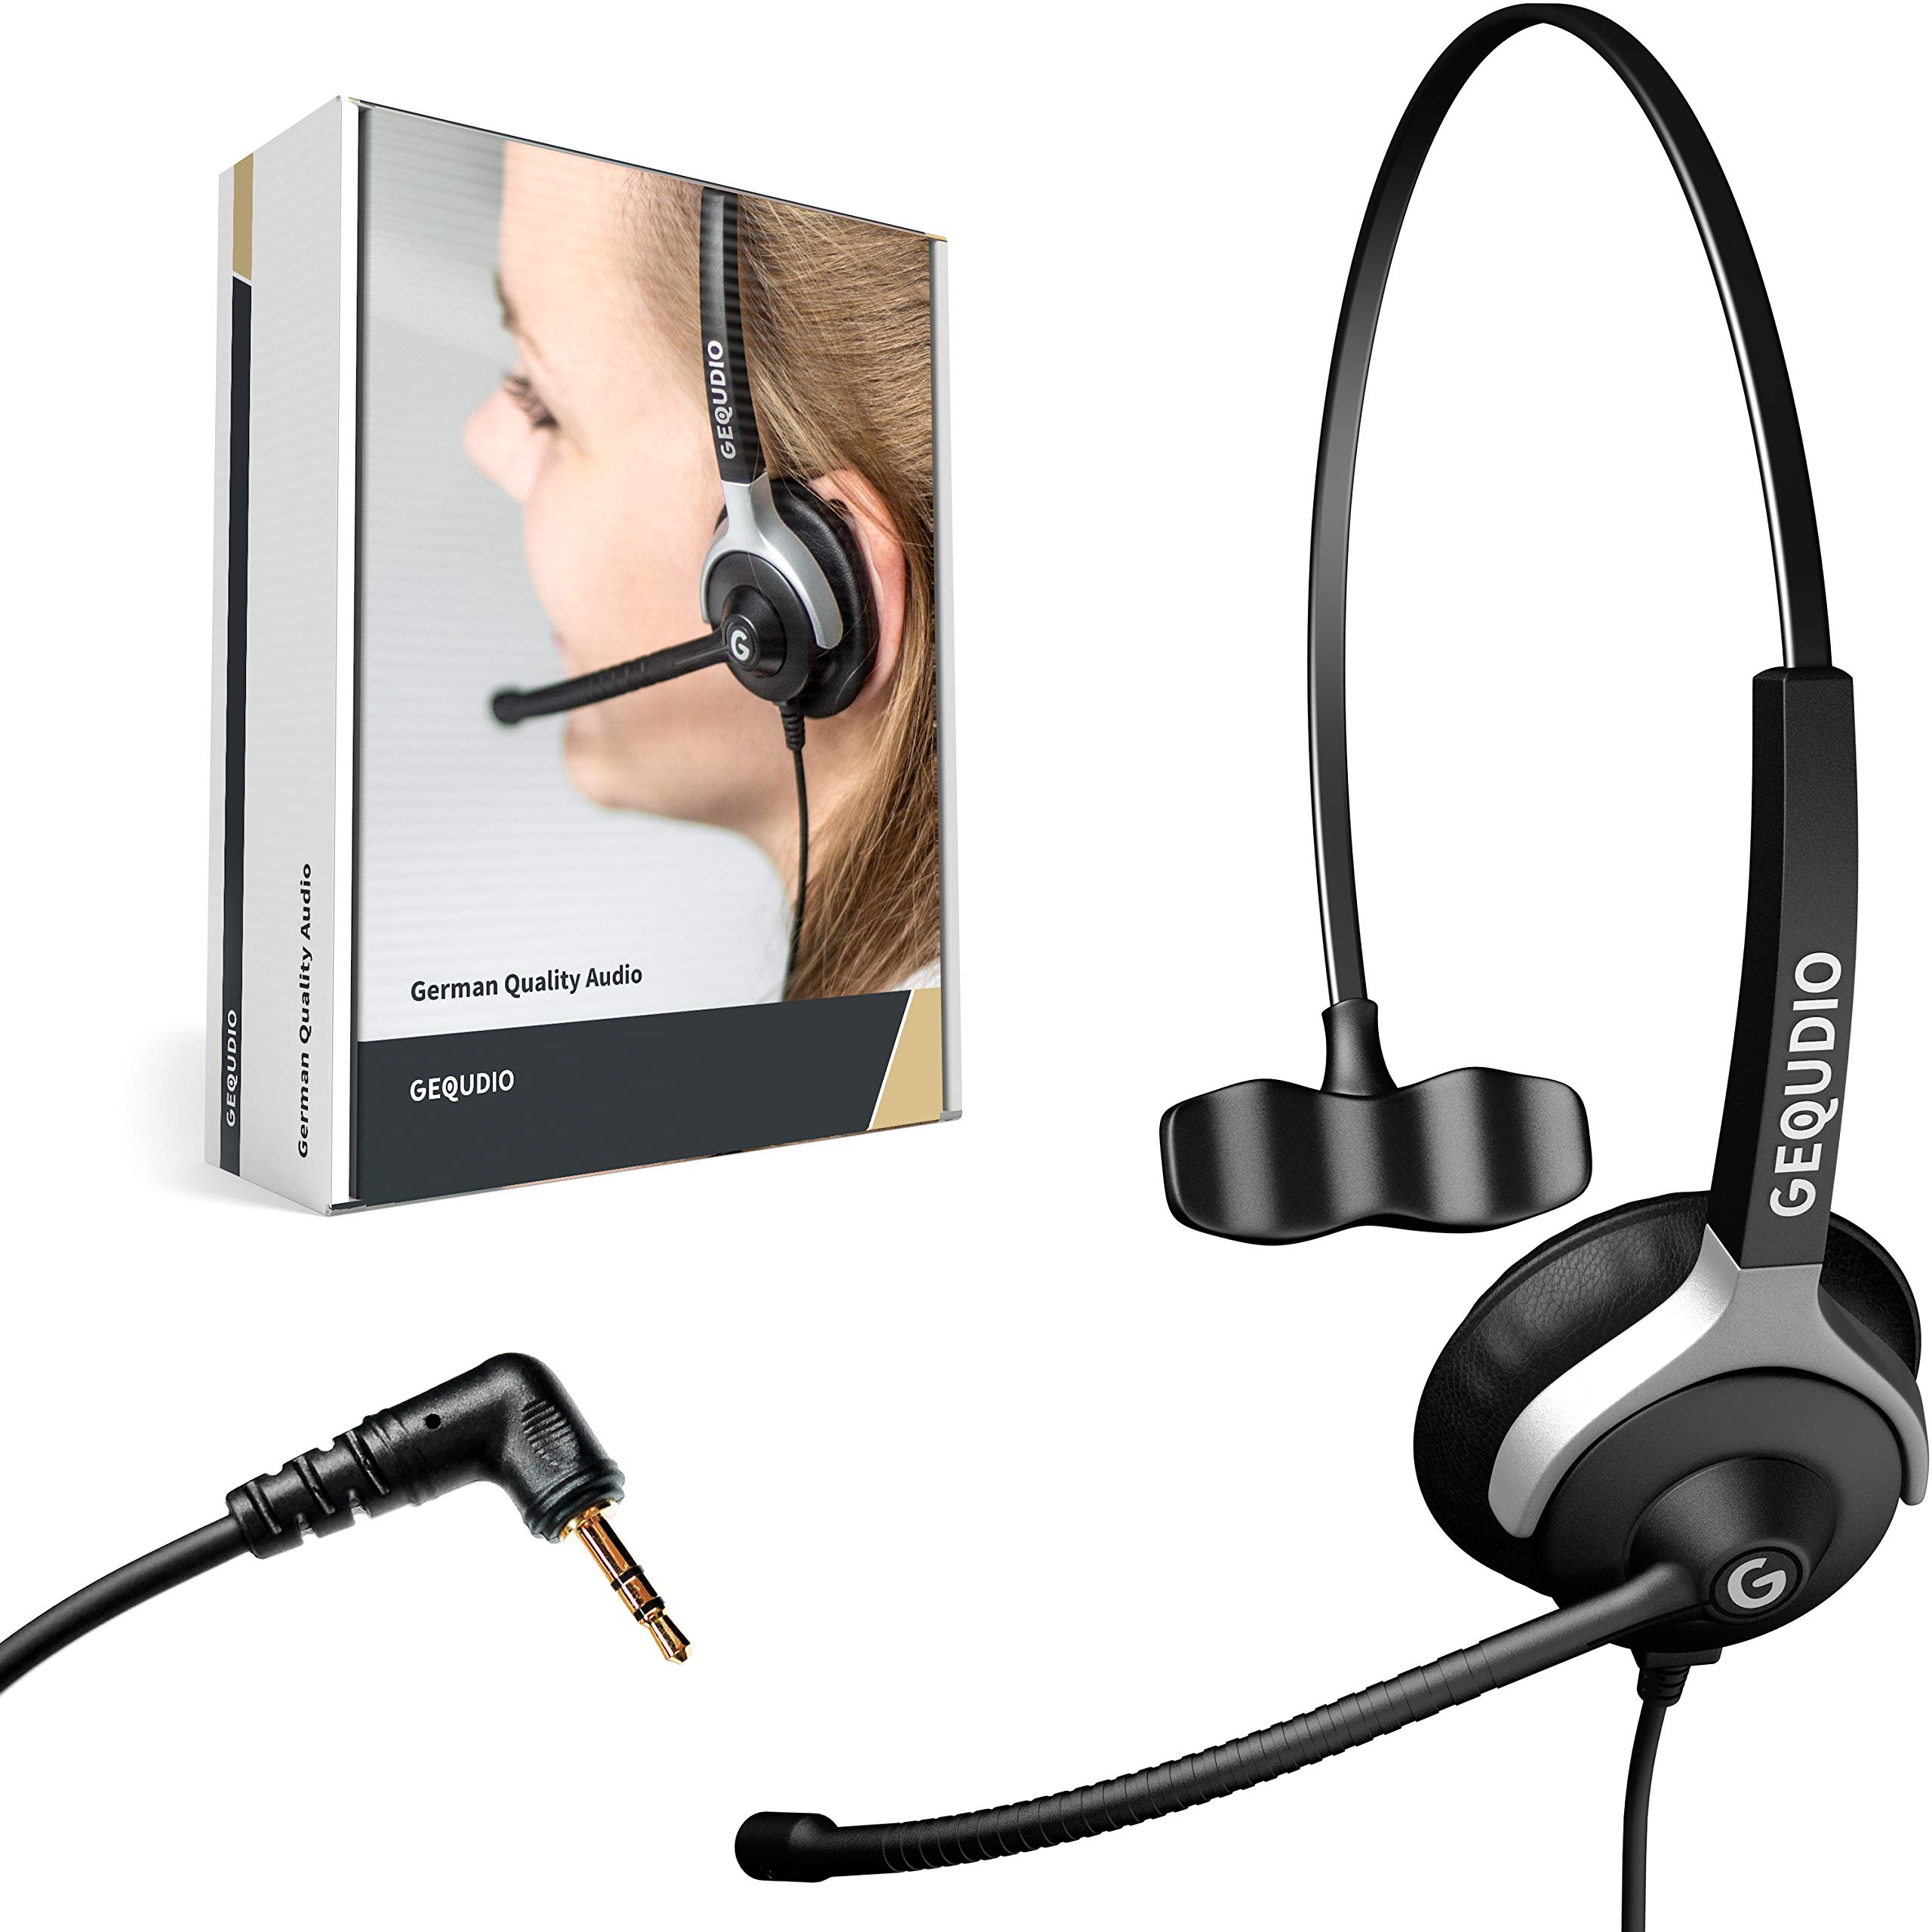 GEQUDIO Headset mit 2,5mm Klinke kompatibel mit Gigaset, Panasonic DECT Schnurlostelefon - Kopfhörer & Mikrofon mit Ersatz Polster - besonders leicht 60g (1-Ohr)